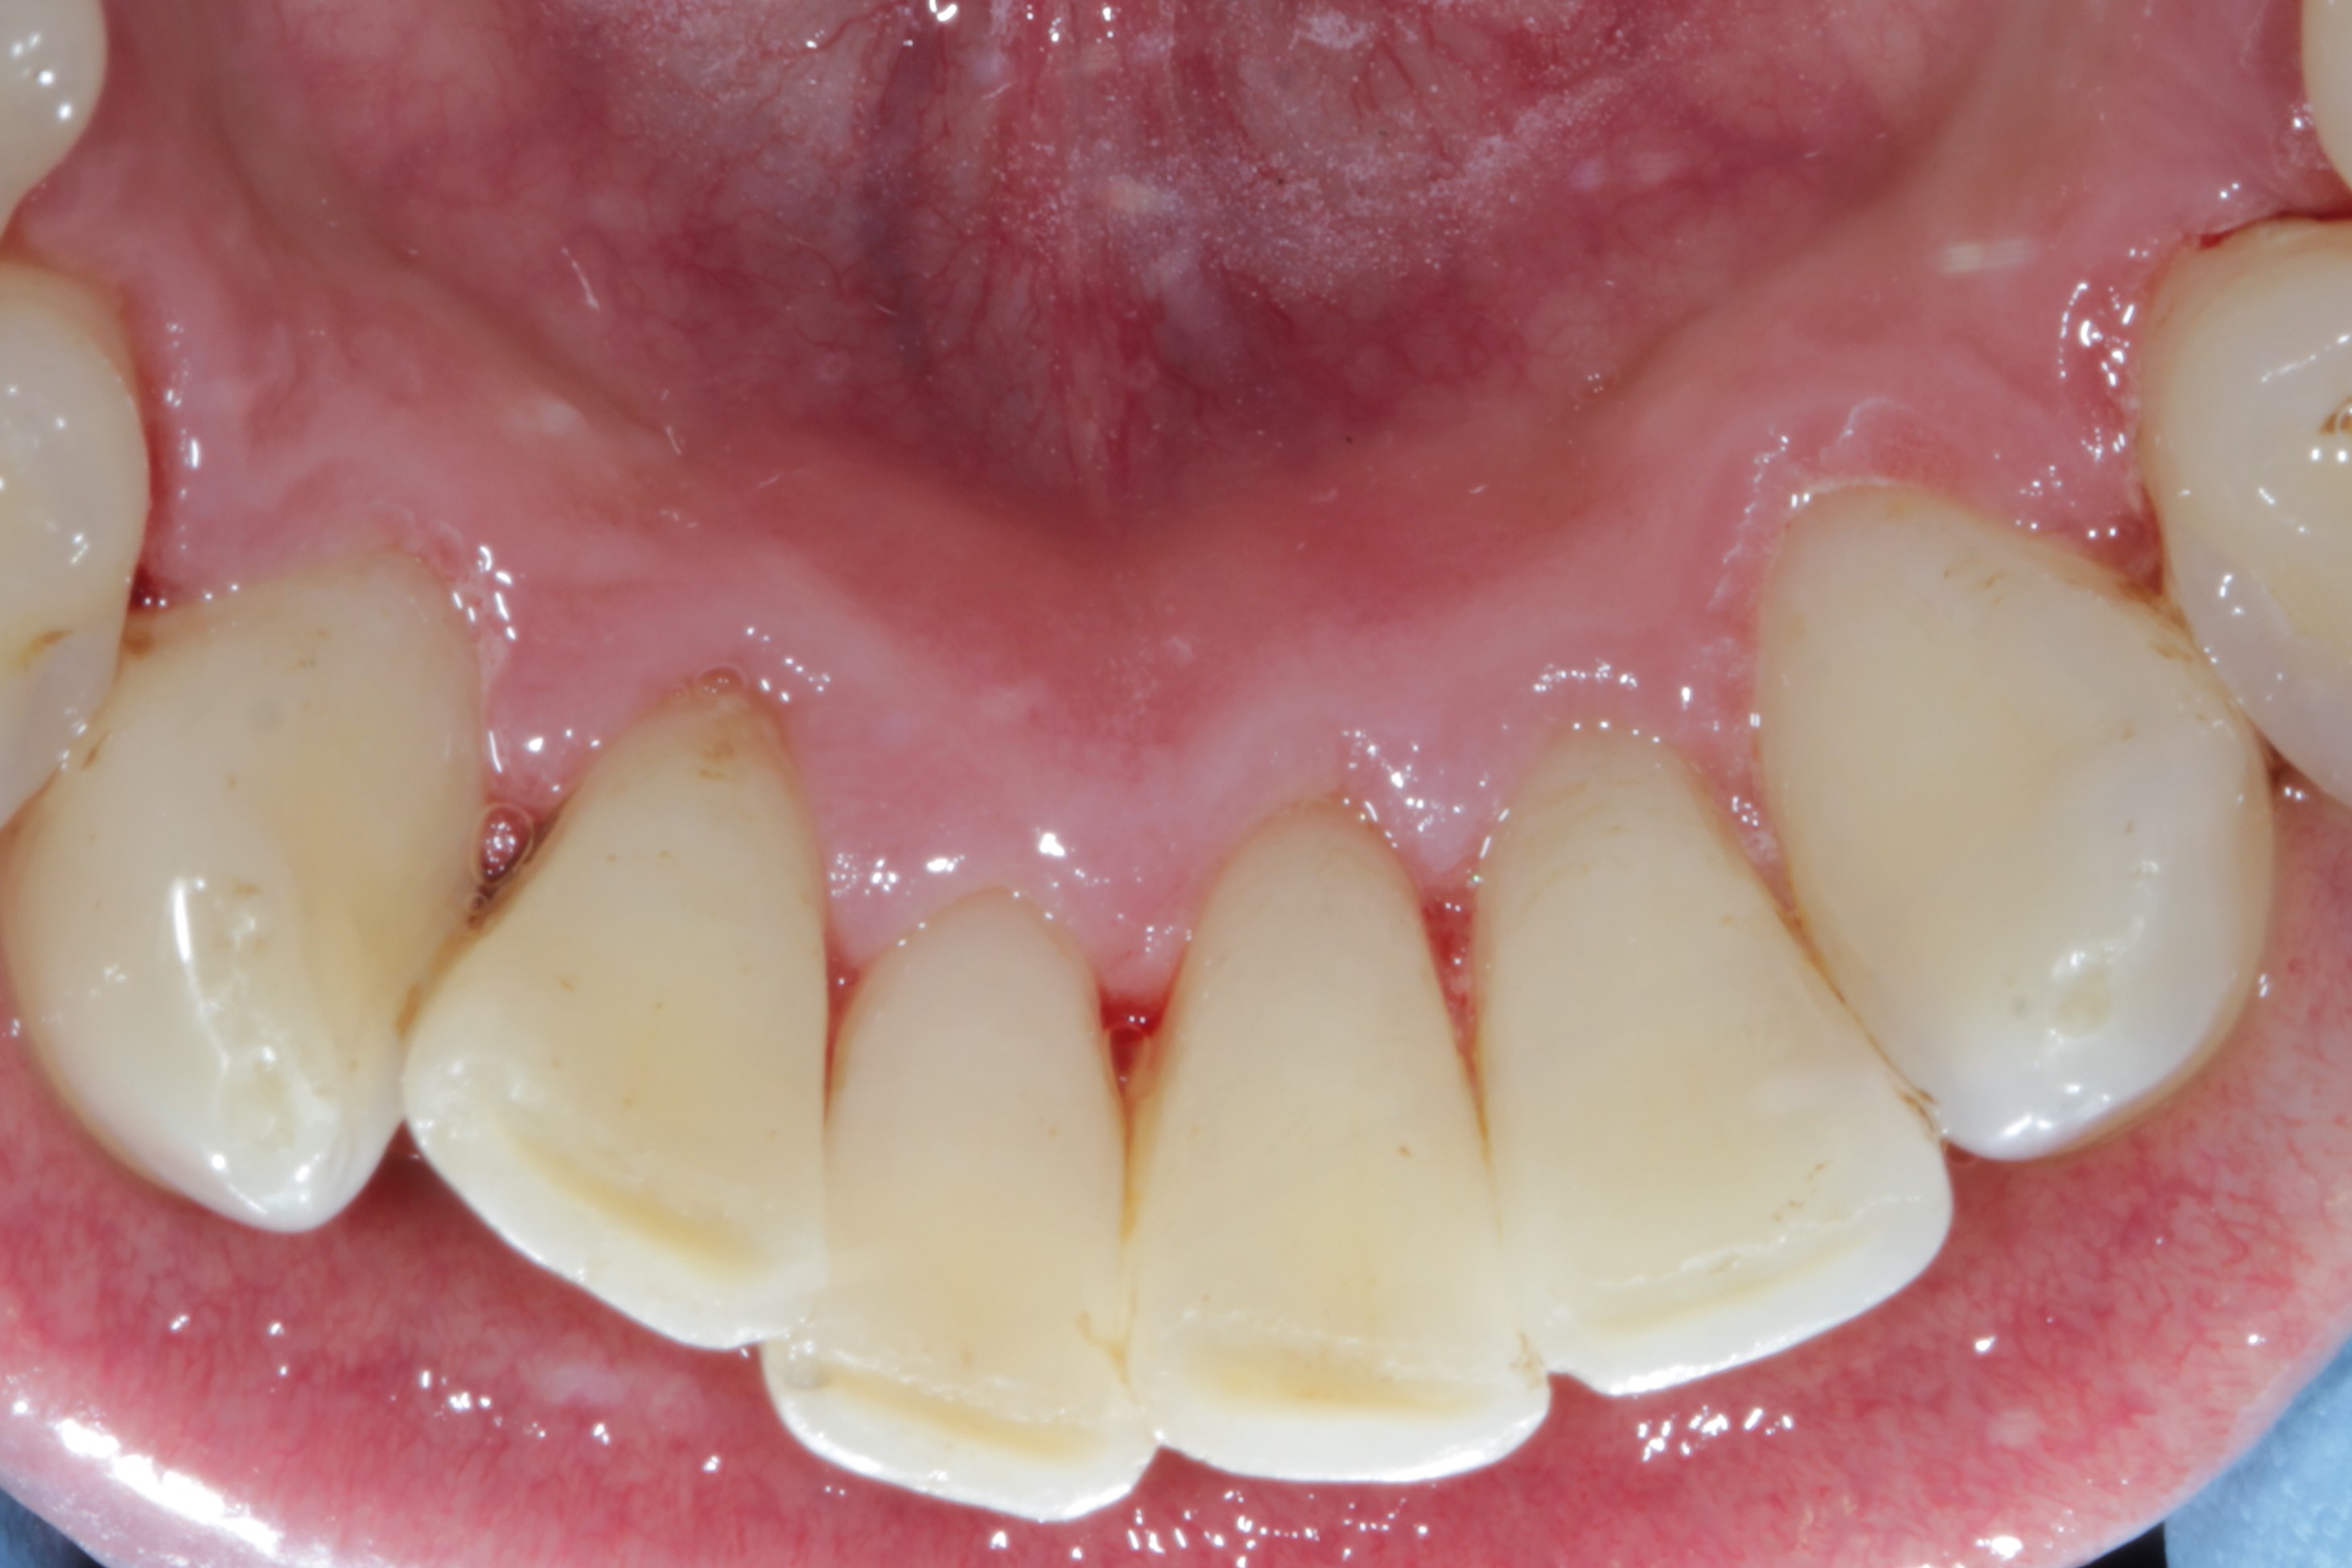 After - Moorside Dental